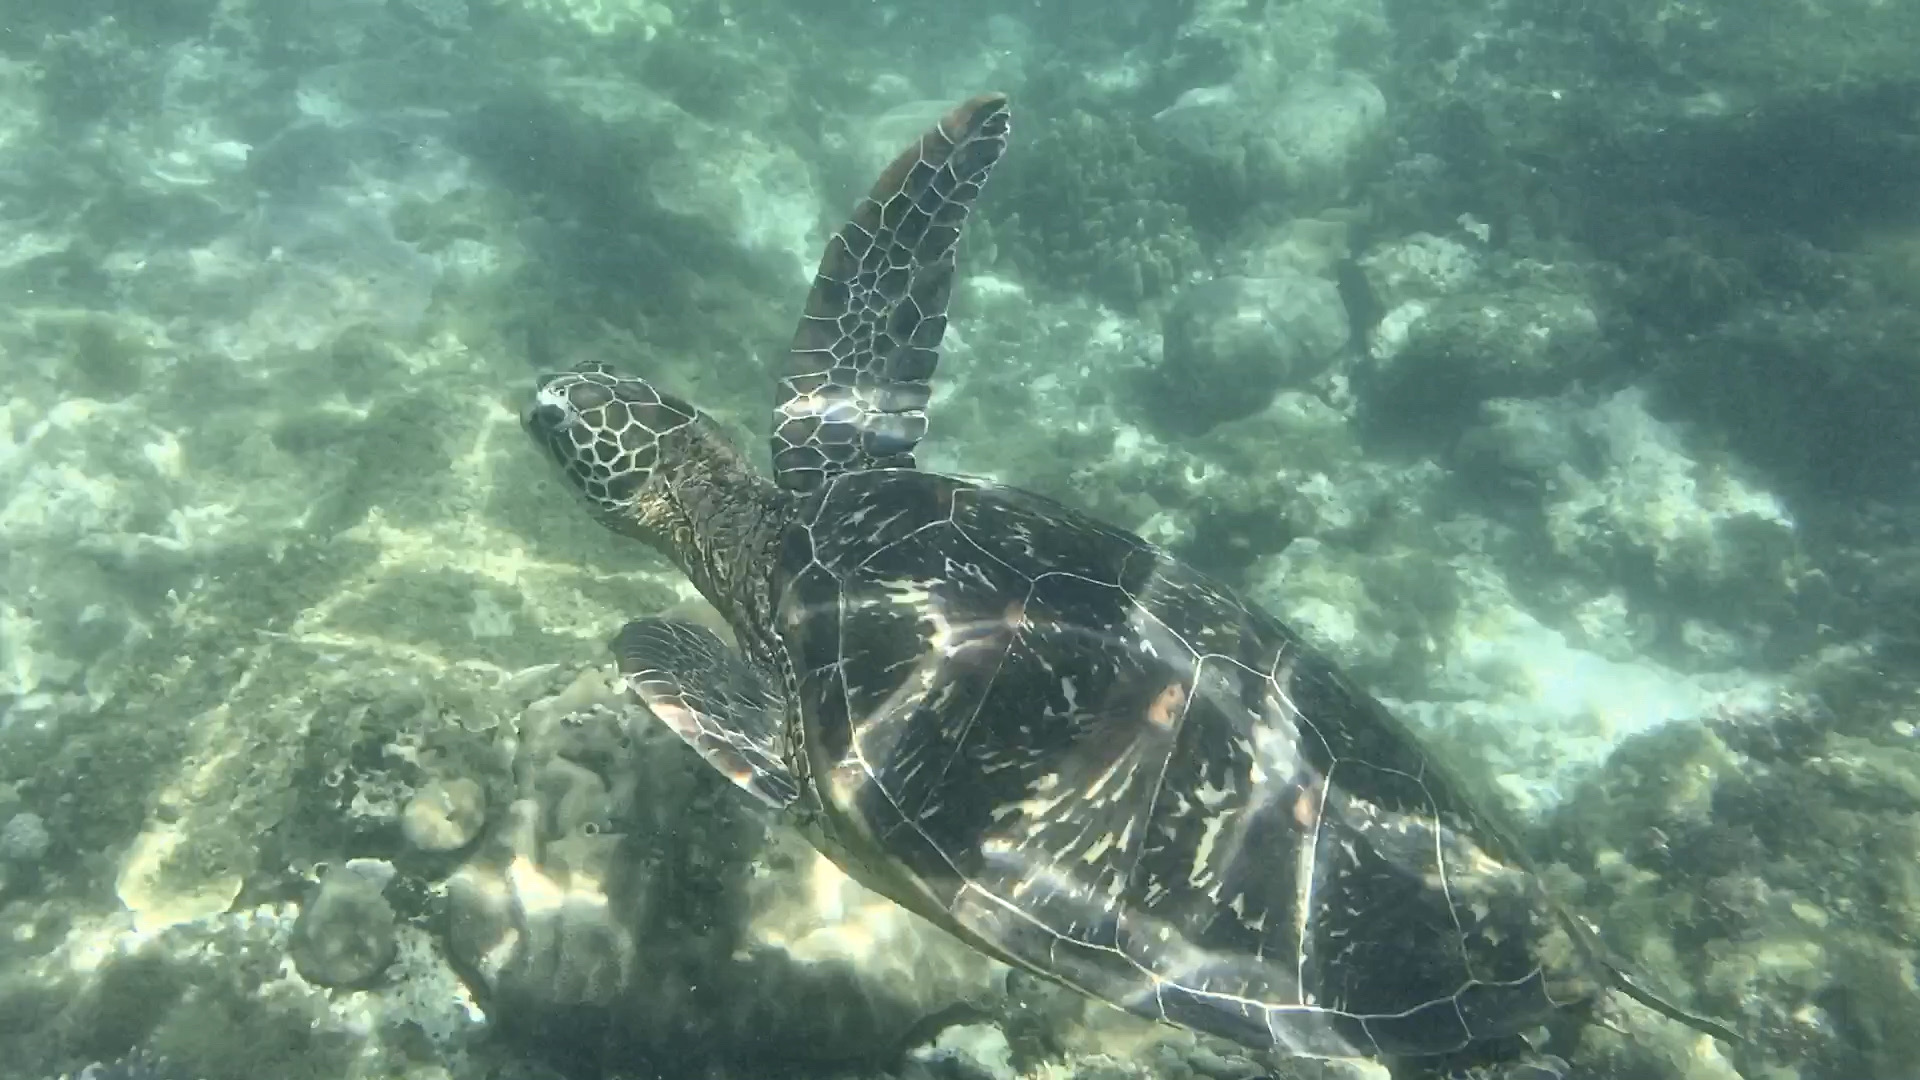 📍详细地址： 阿波岛  杜马盖地南侧出海30min，隔海可相望  👍特色推荐： 海龟保护区，实实在在